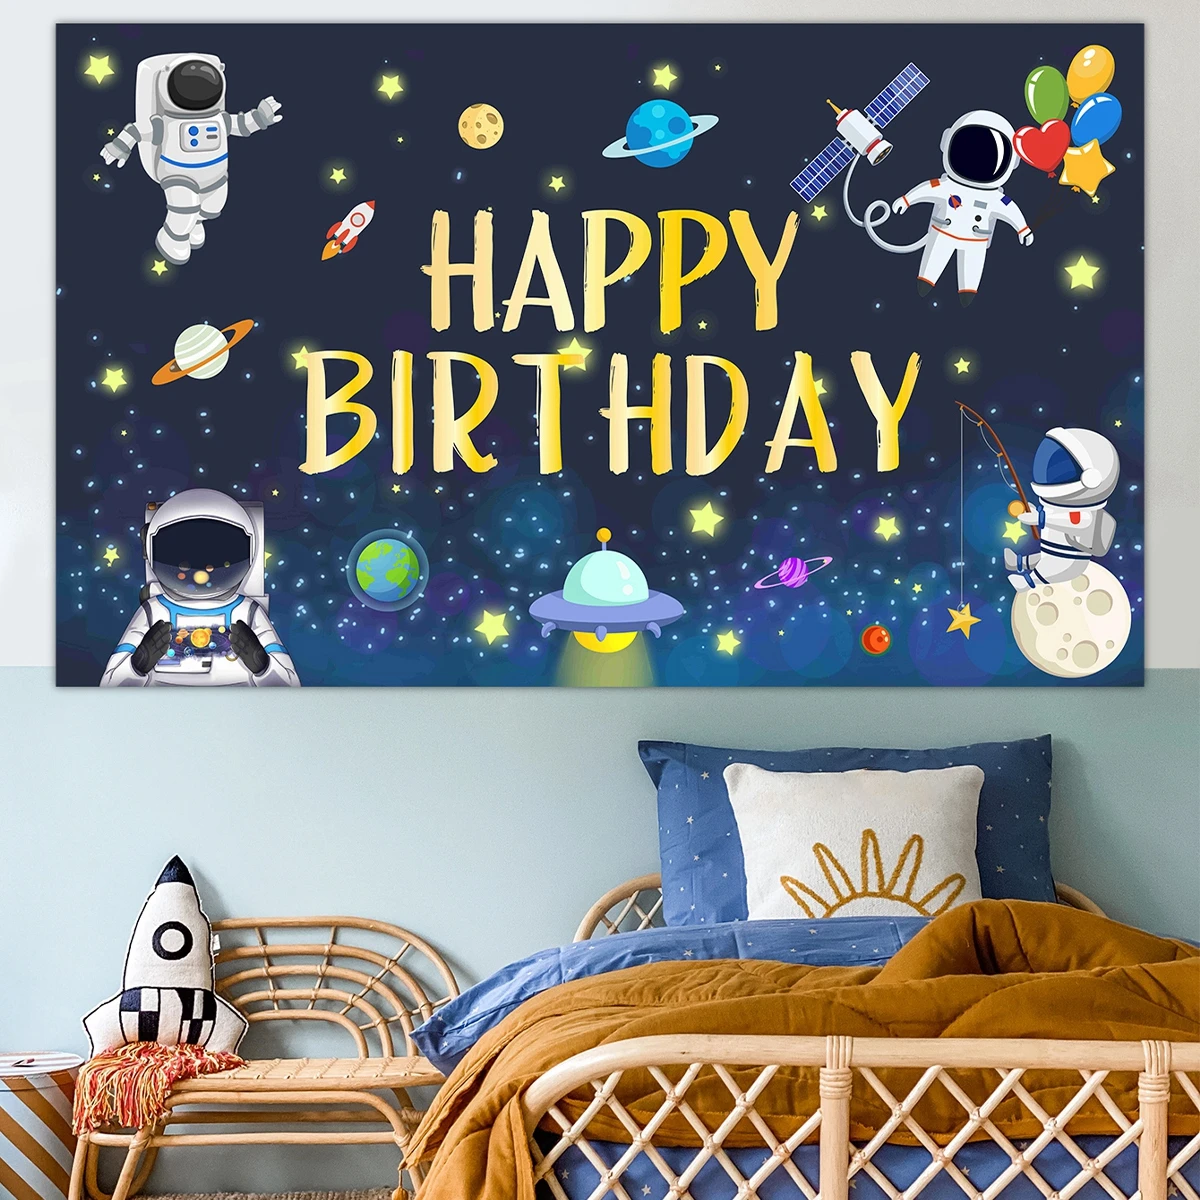 

Вселенная Космос Фон тканевый планета космический корабль астронавт фон ребенок день рождения вечеринка Декор звездное небо декорация бан...